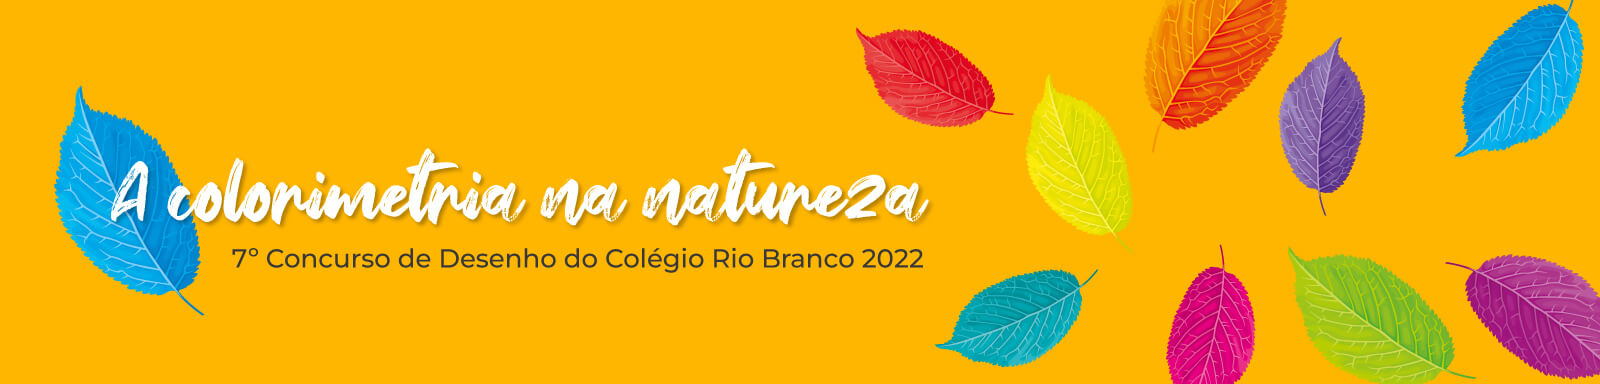 7º Concurso de Desenho do Colégio Rio Branco 2022 - A colorimetria na Natureza